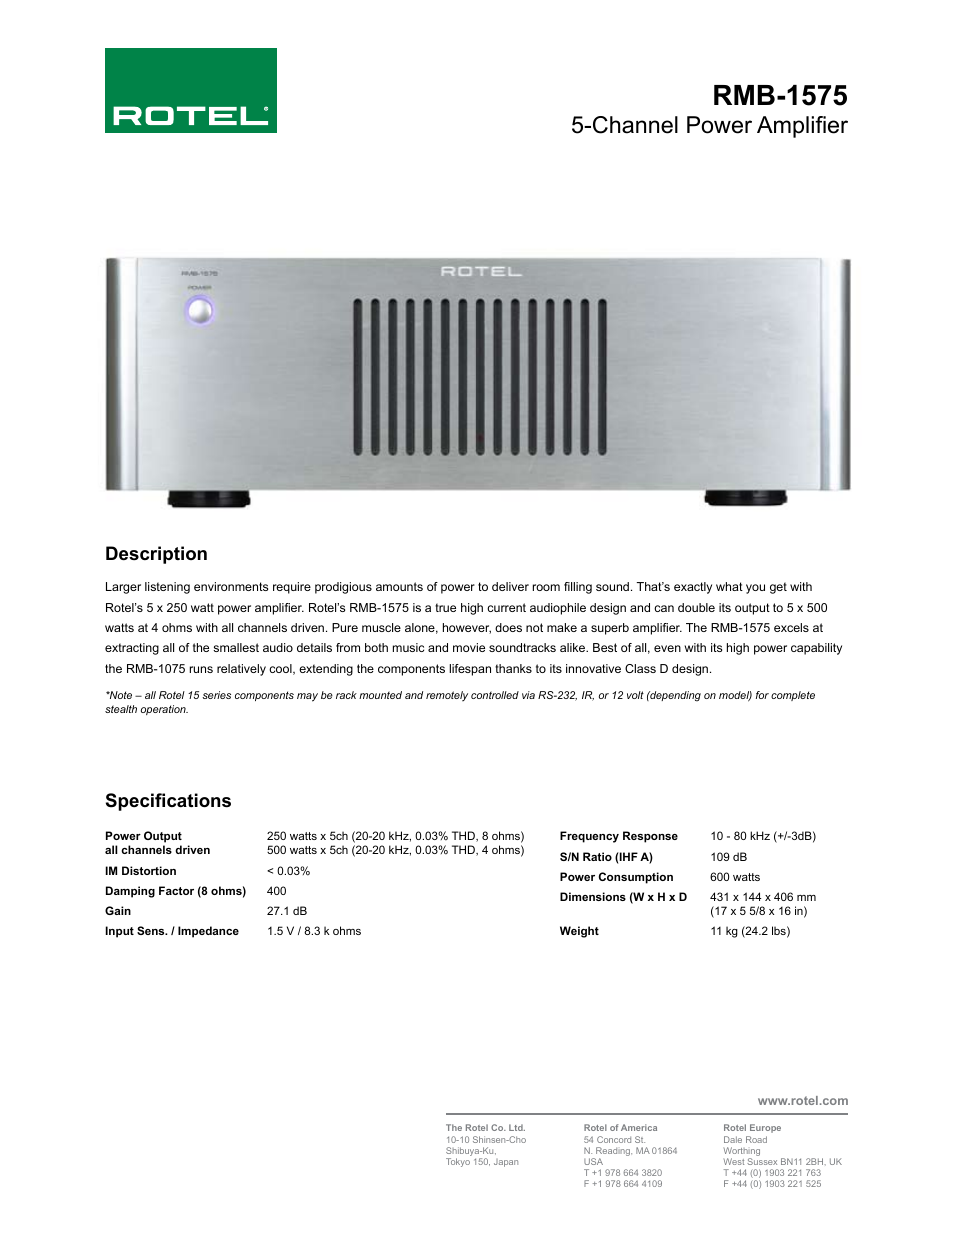 Five Channel Power Amplifier RMB-1575